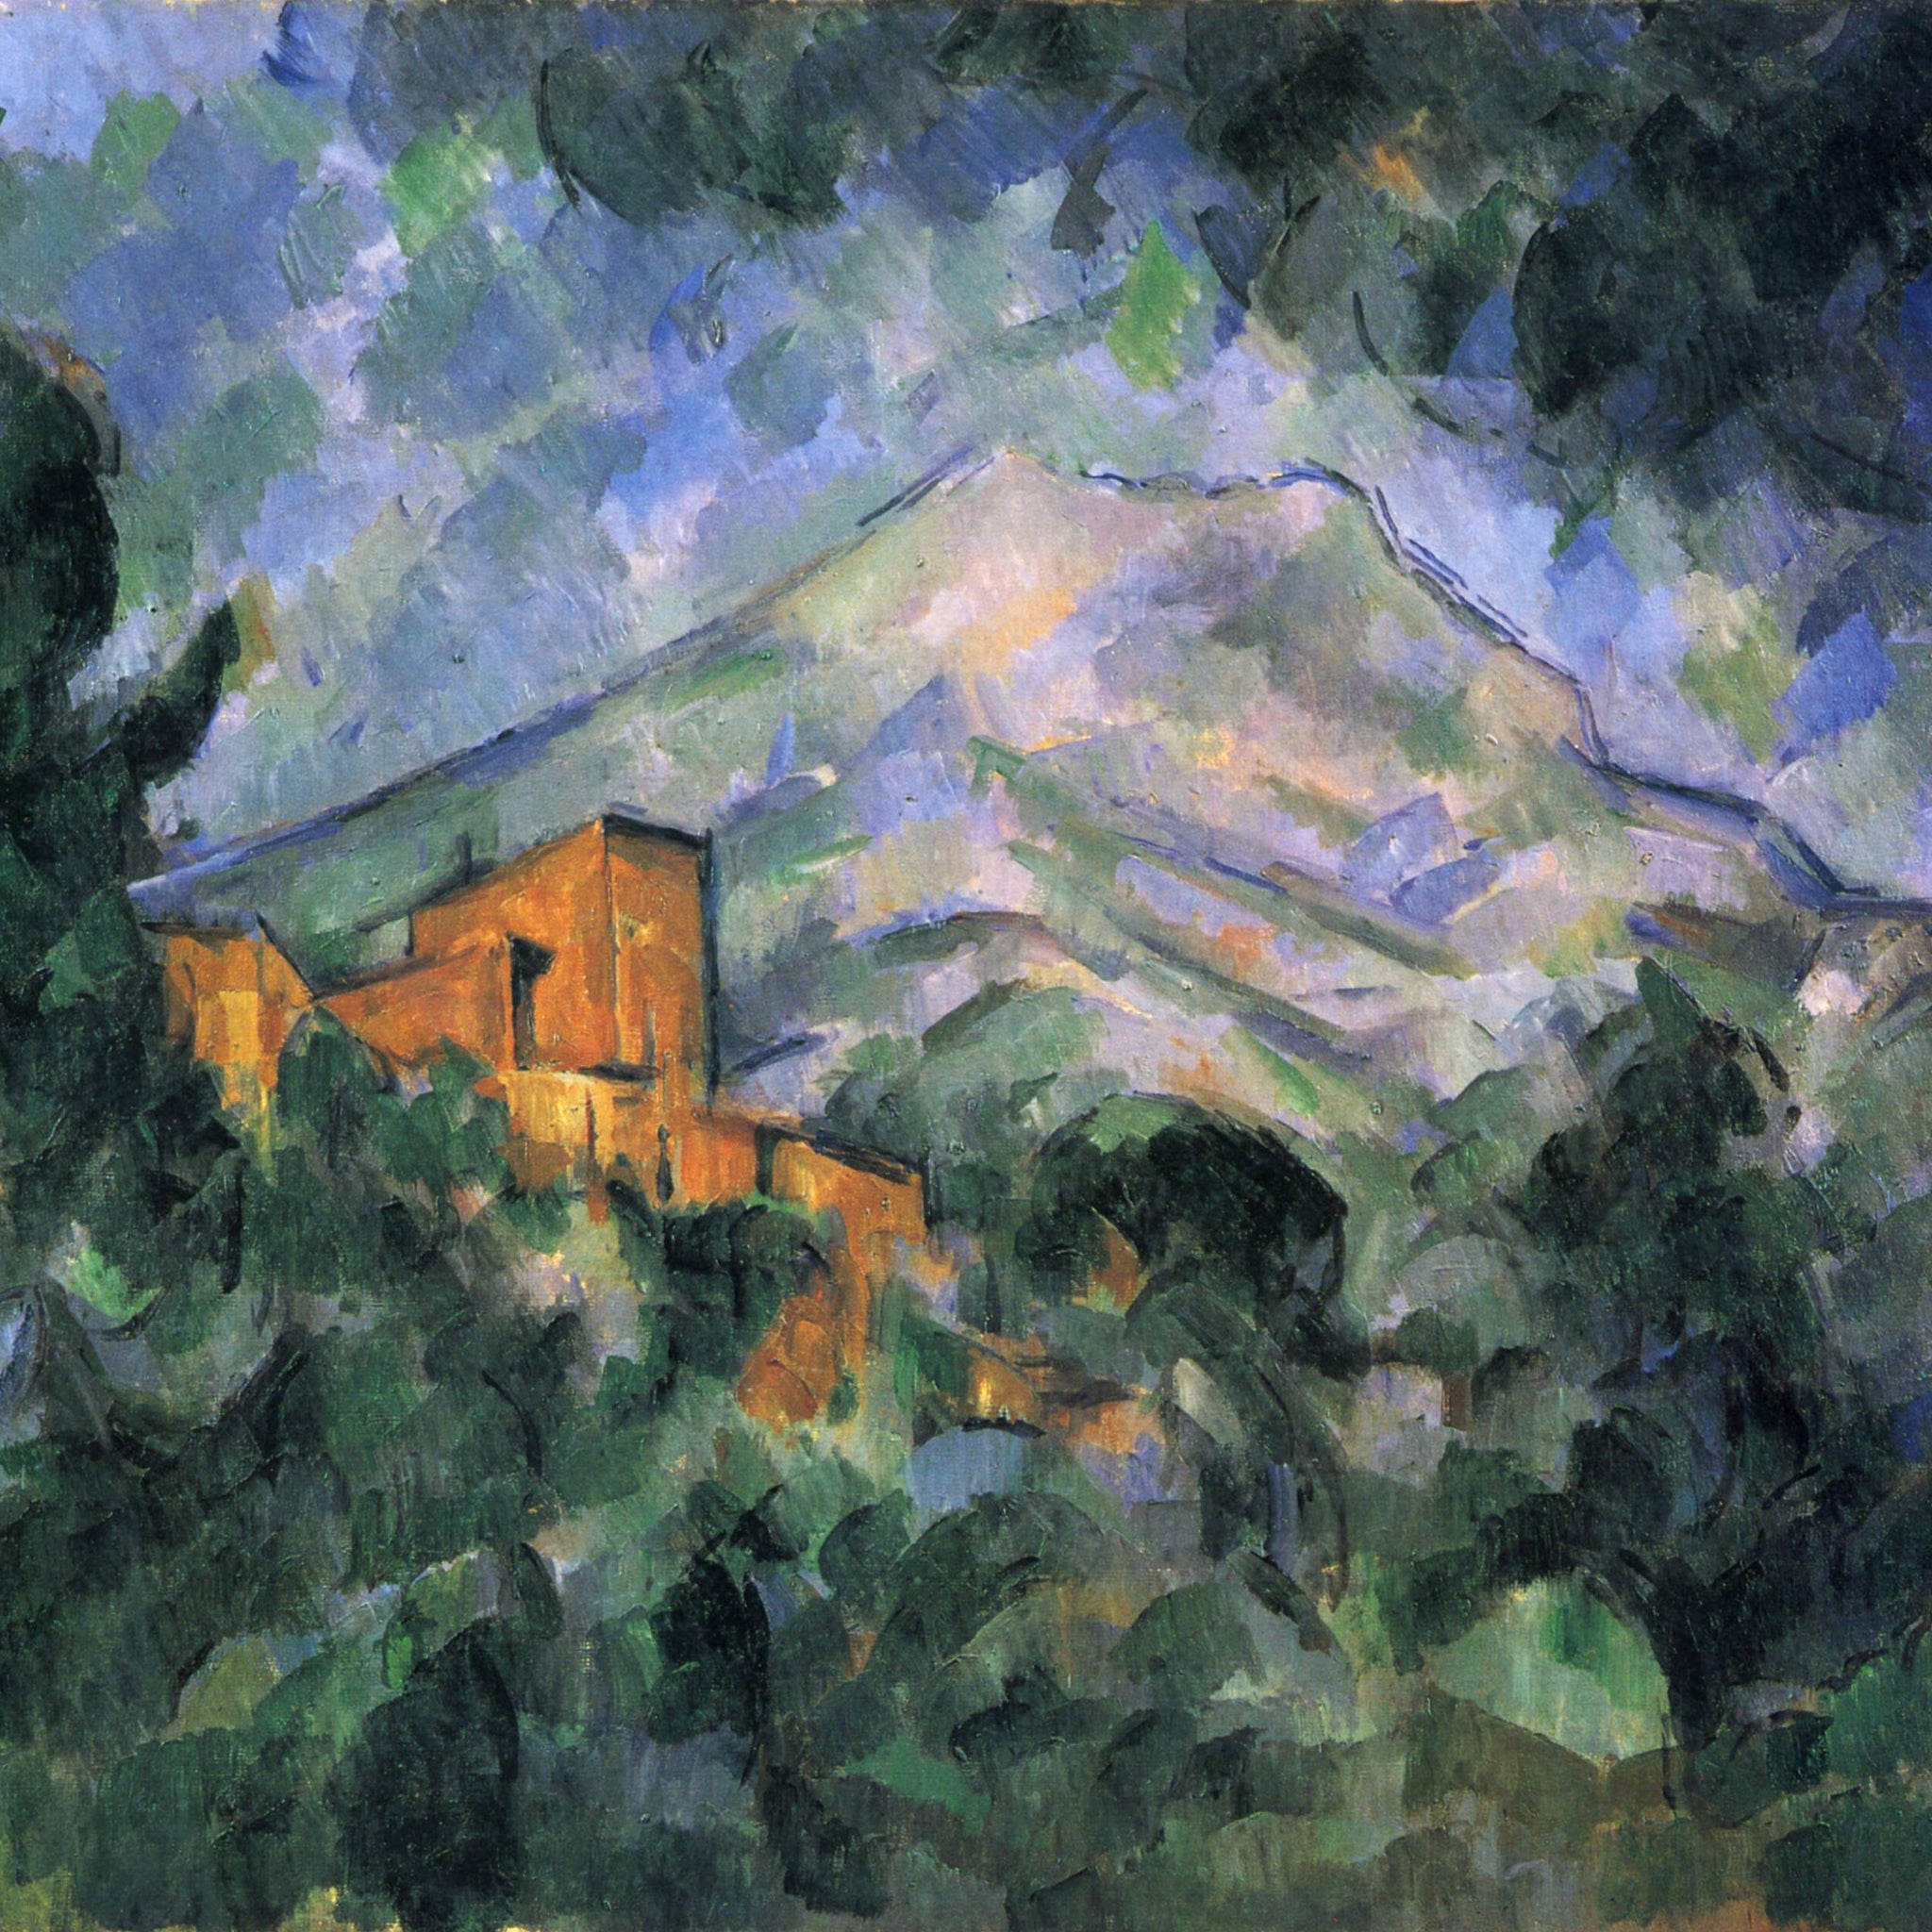 La Montagne Sainte-Victoire et Château Noir - Paul Cézanne